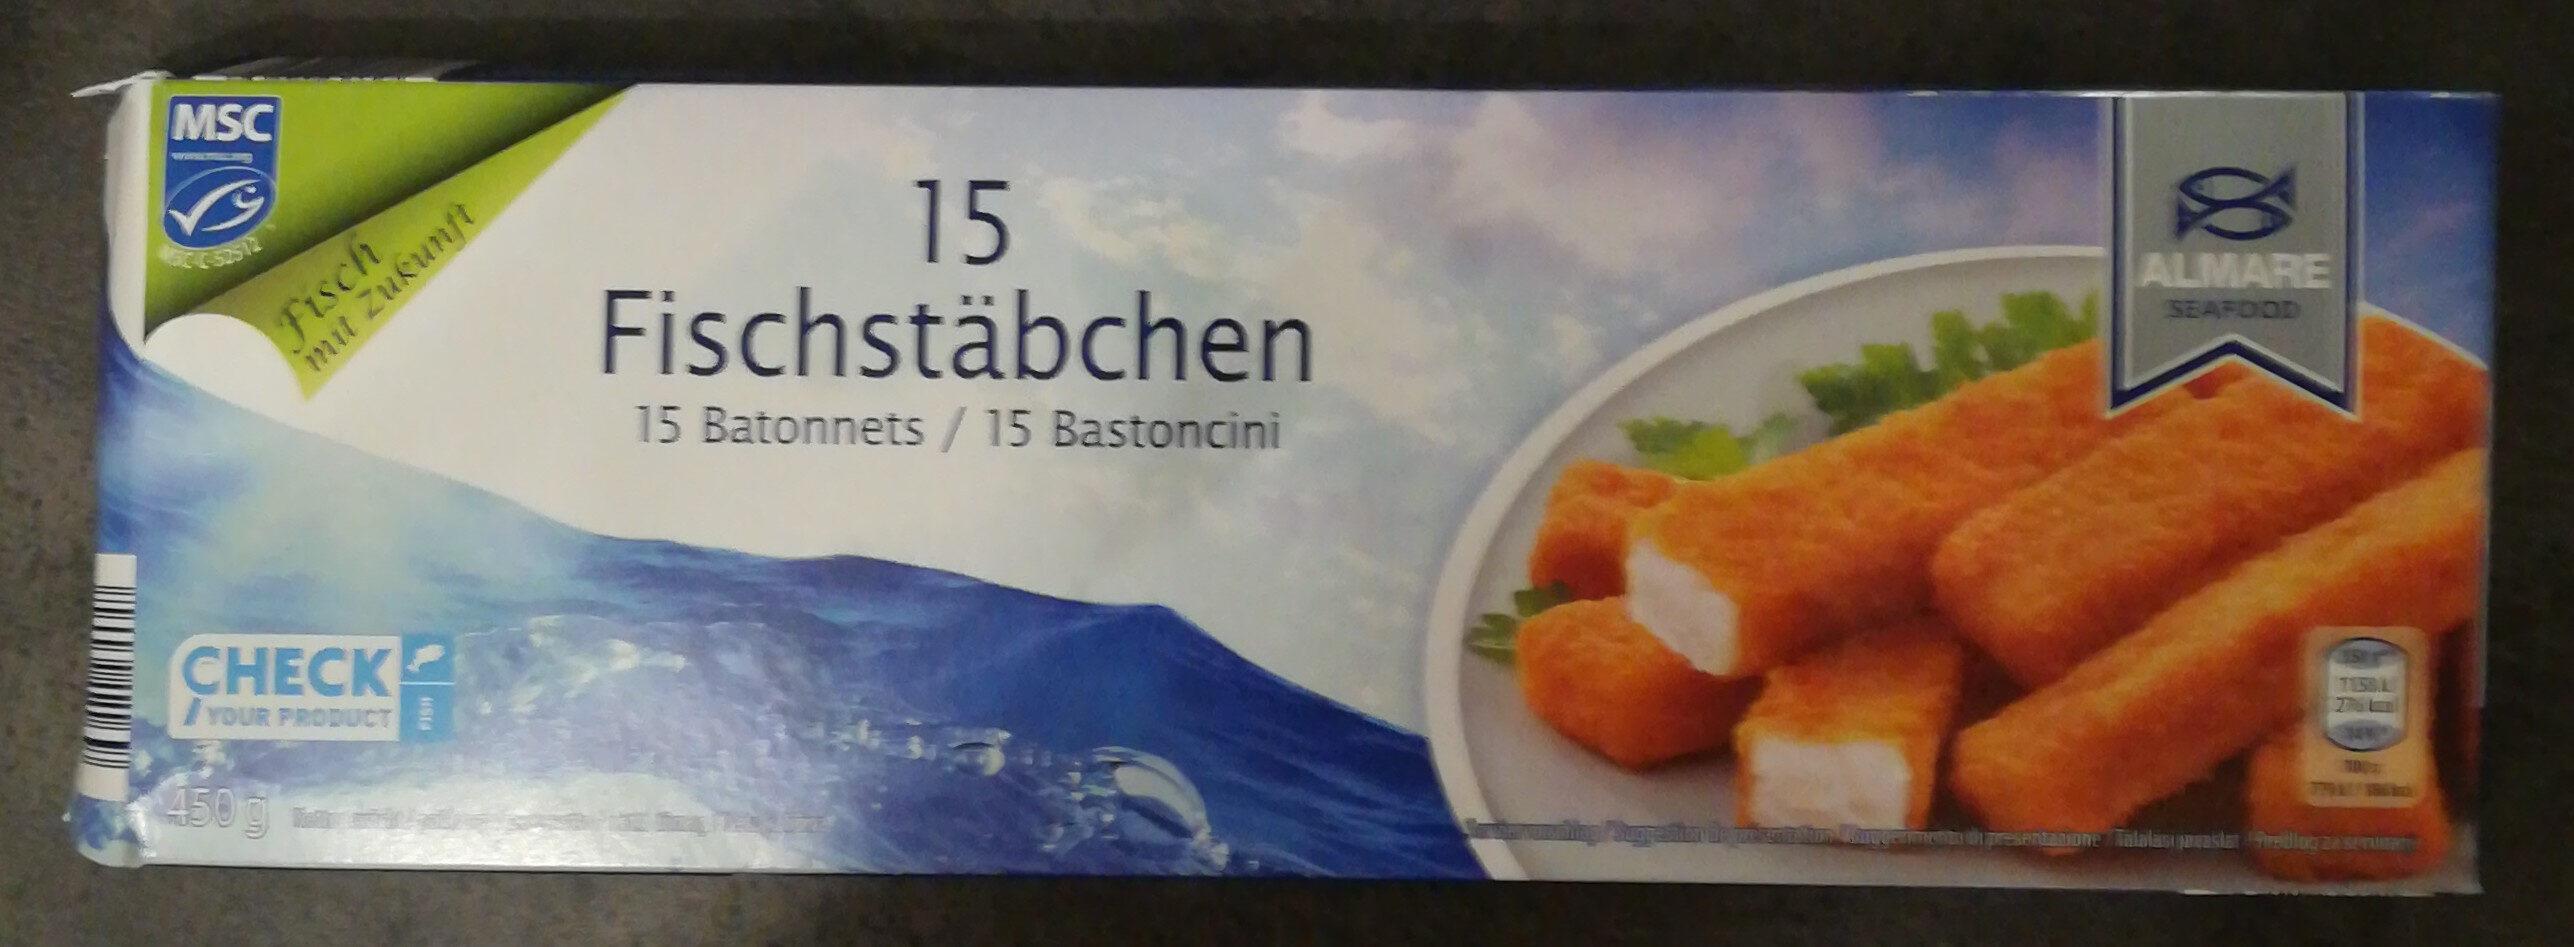 15 Fischstäbchen - Prodotto - de